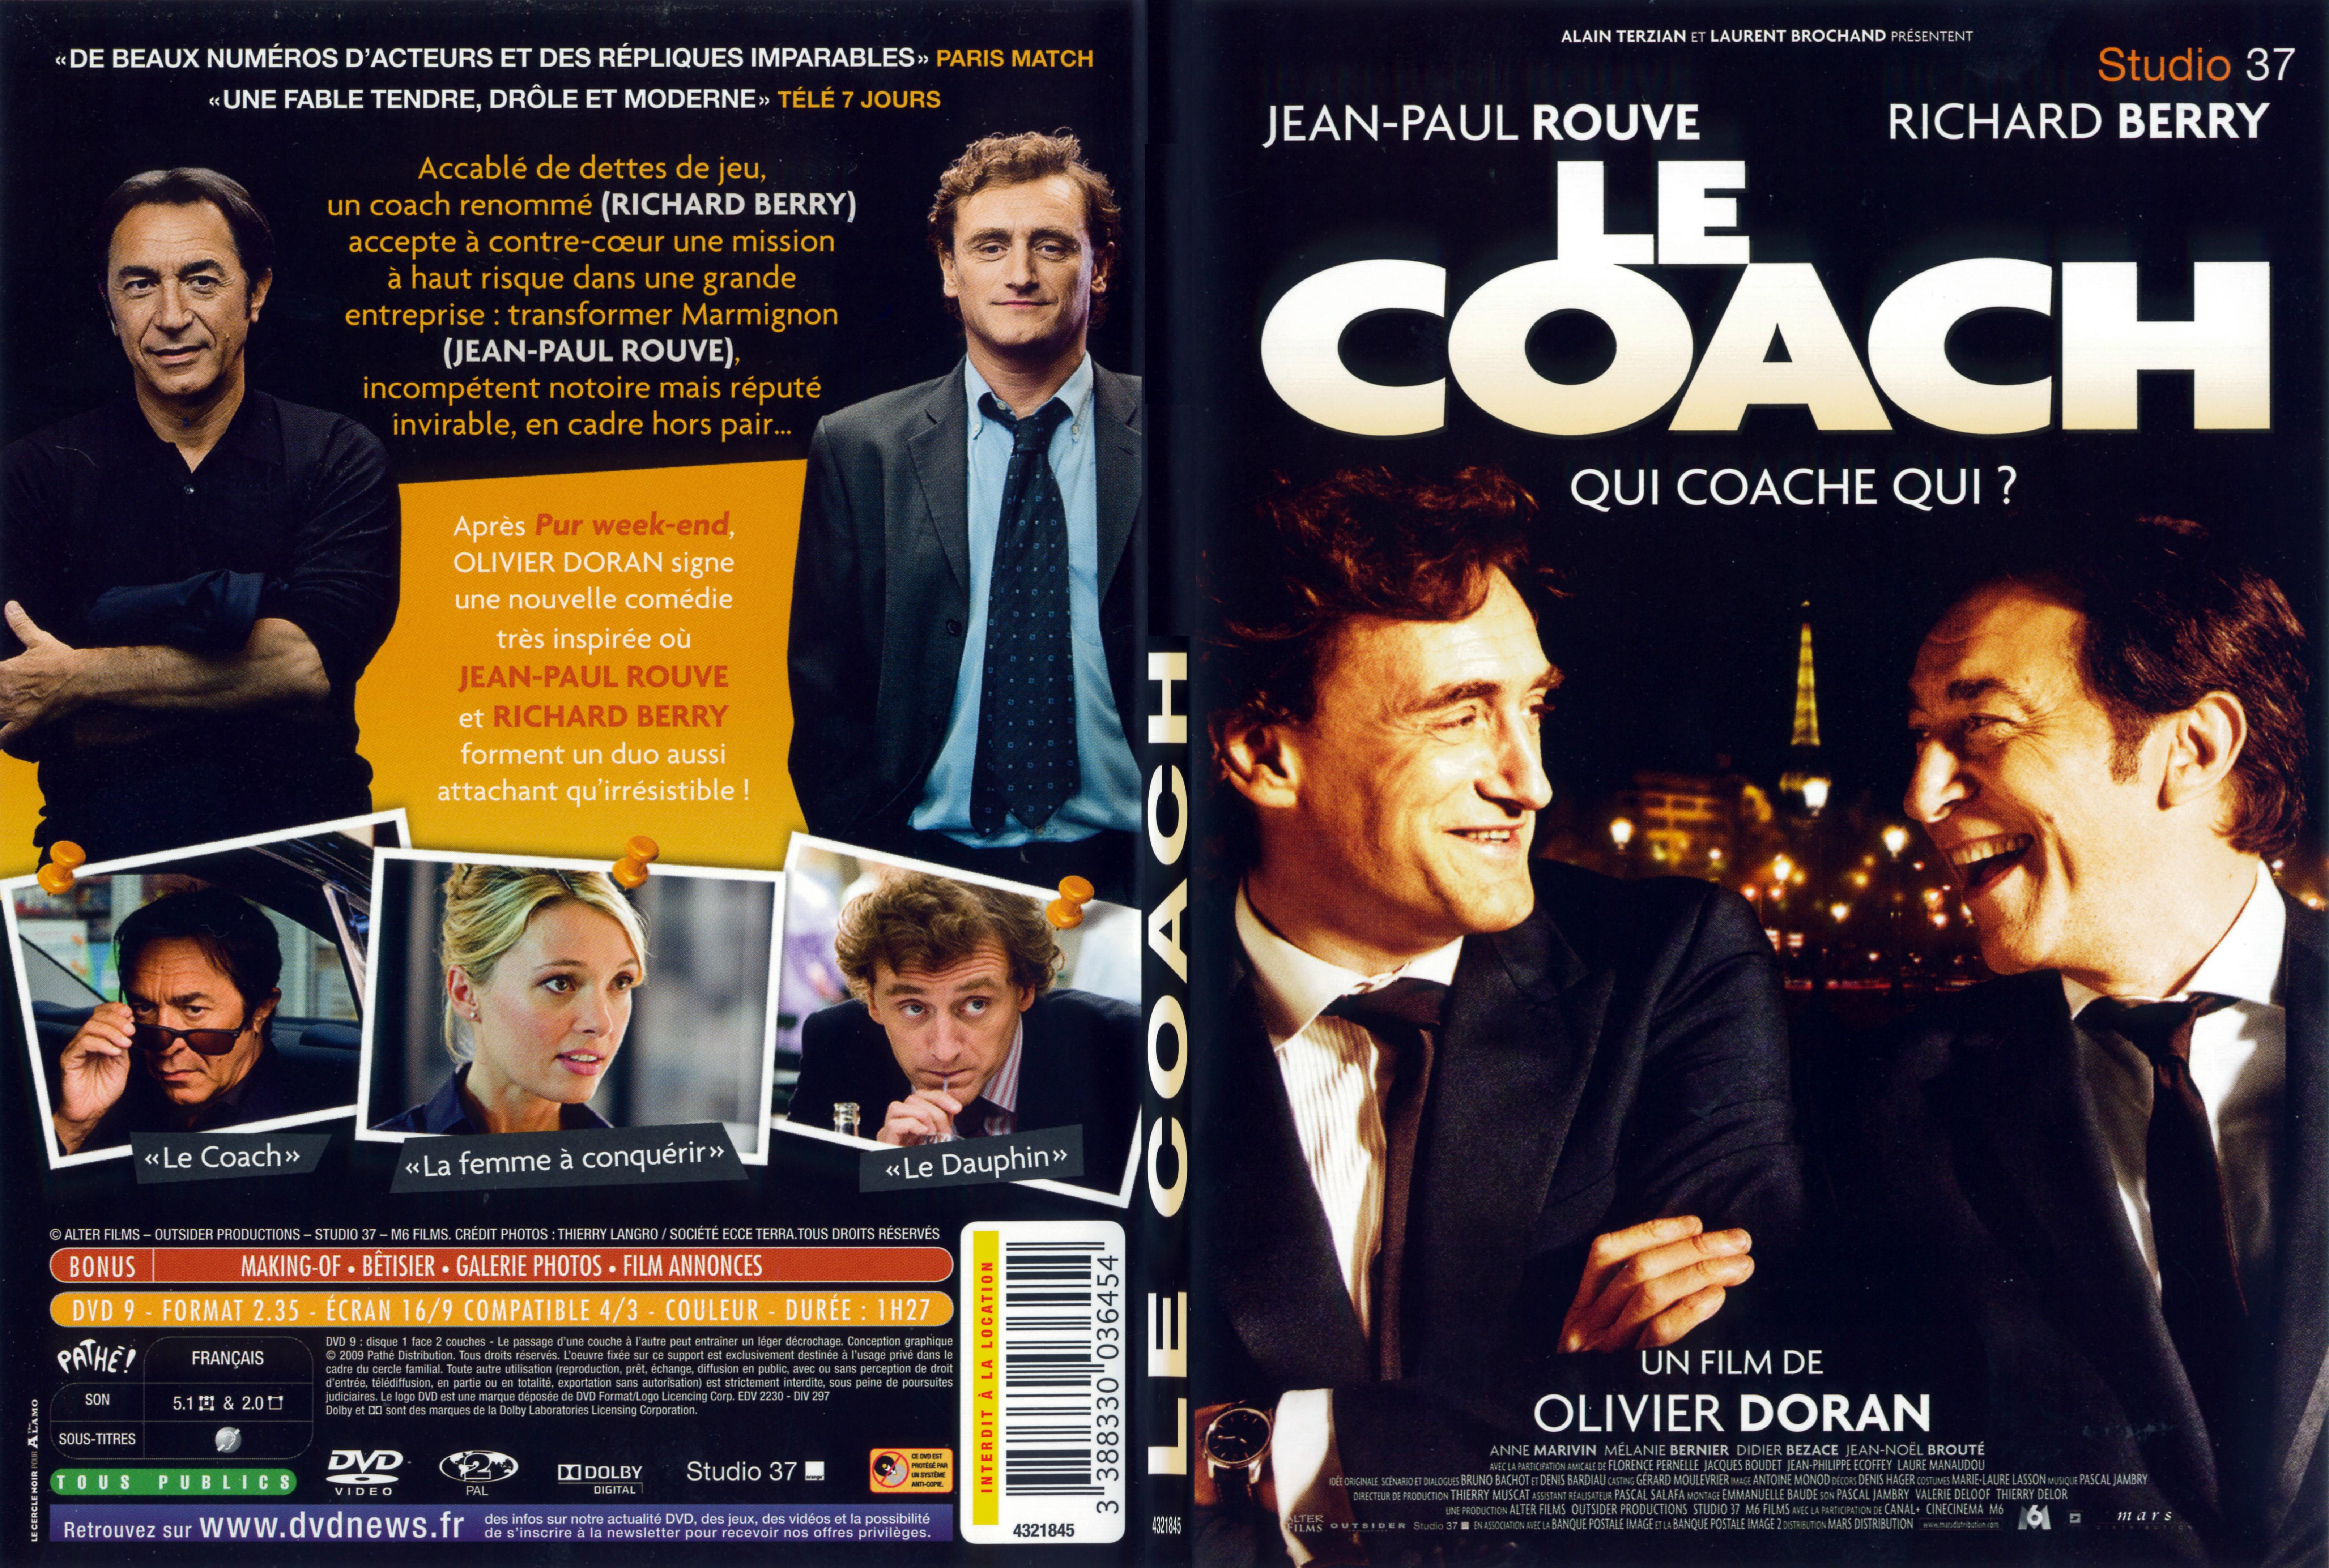 Jaquette DVD Le coach - SLIM